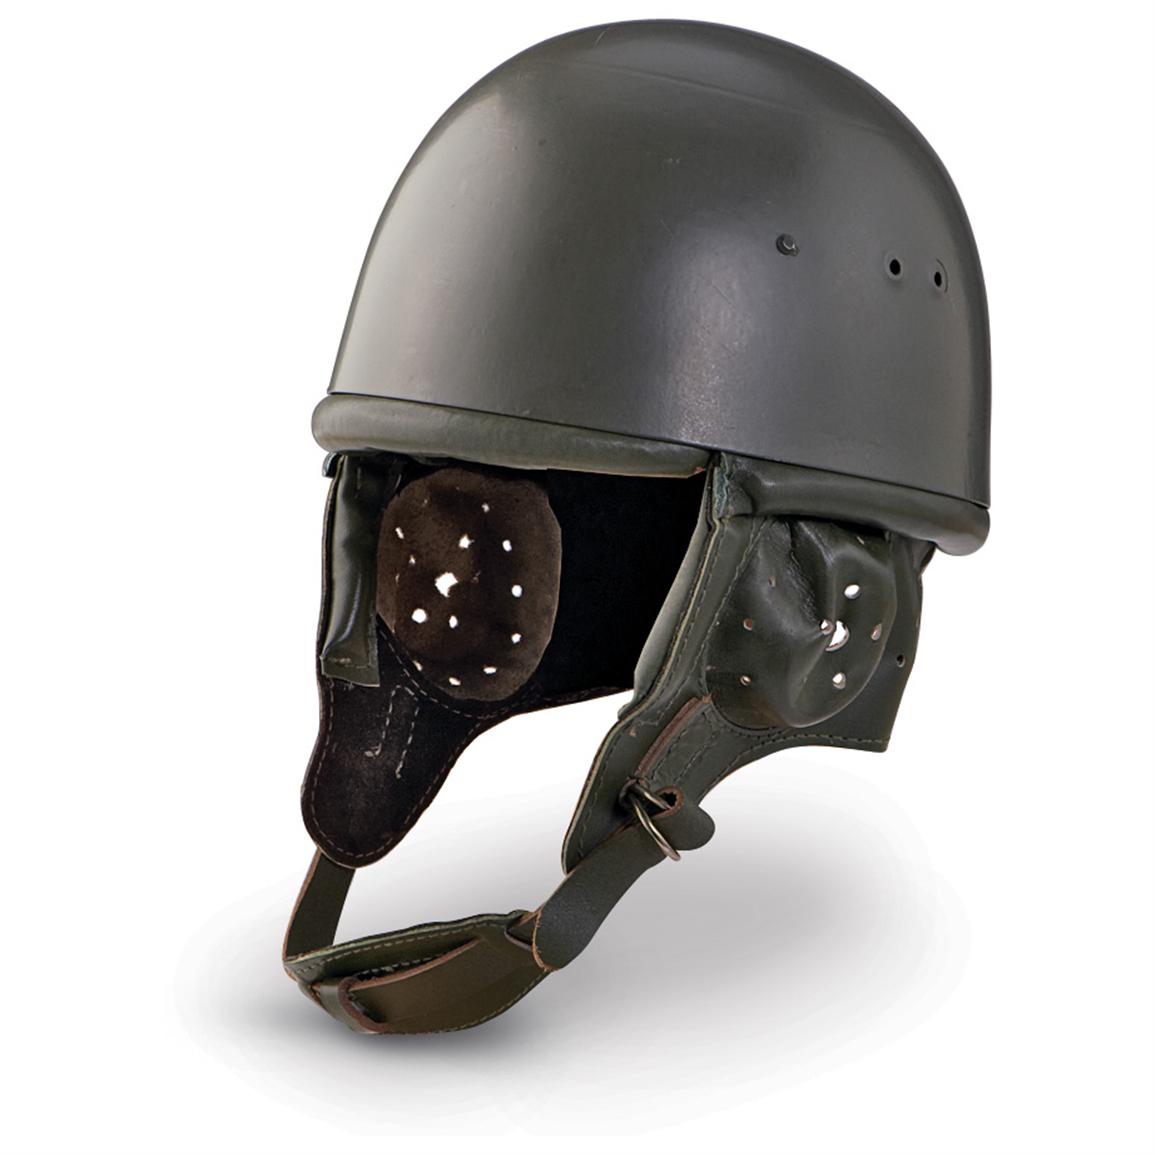 New East German Paratrooper Helmet - 110538, at Sportsman ...